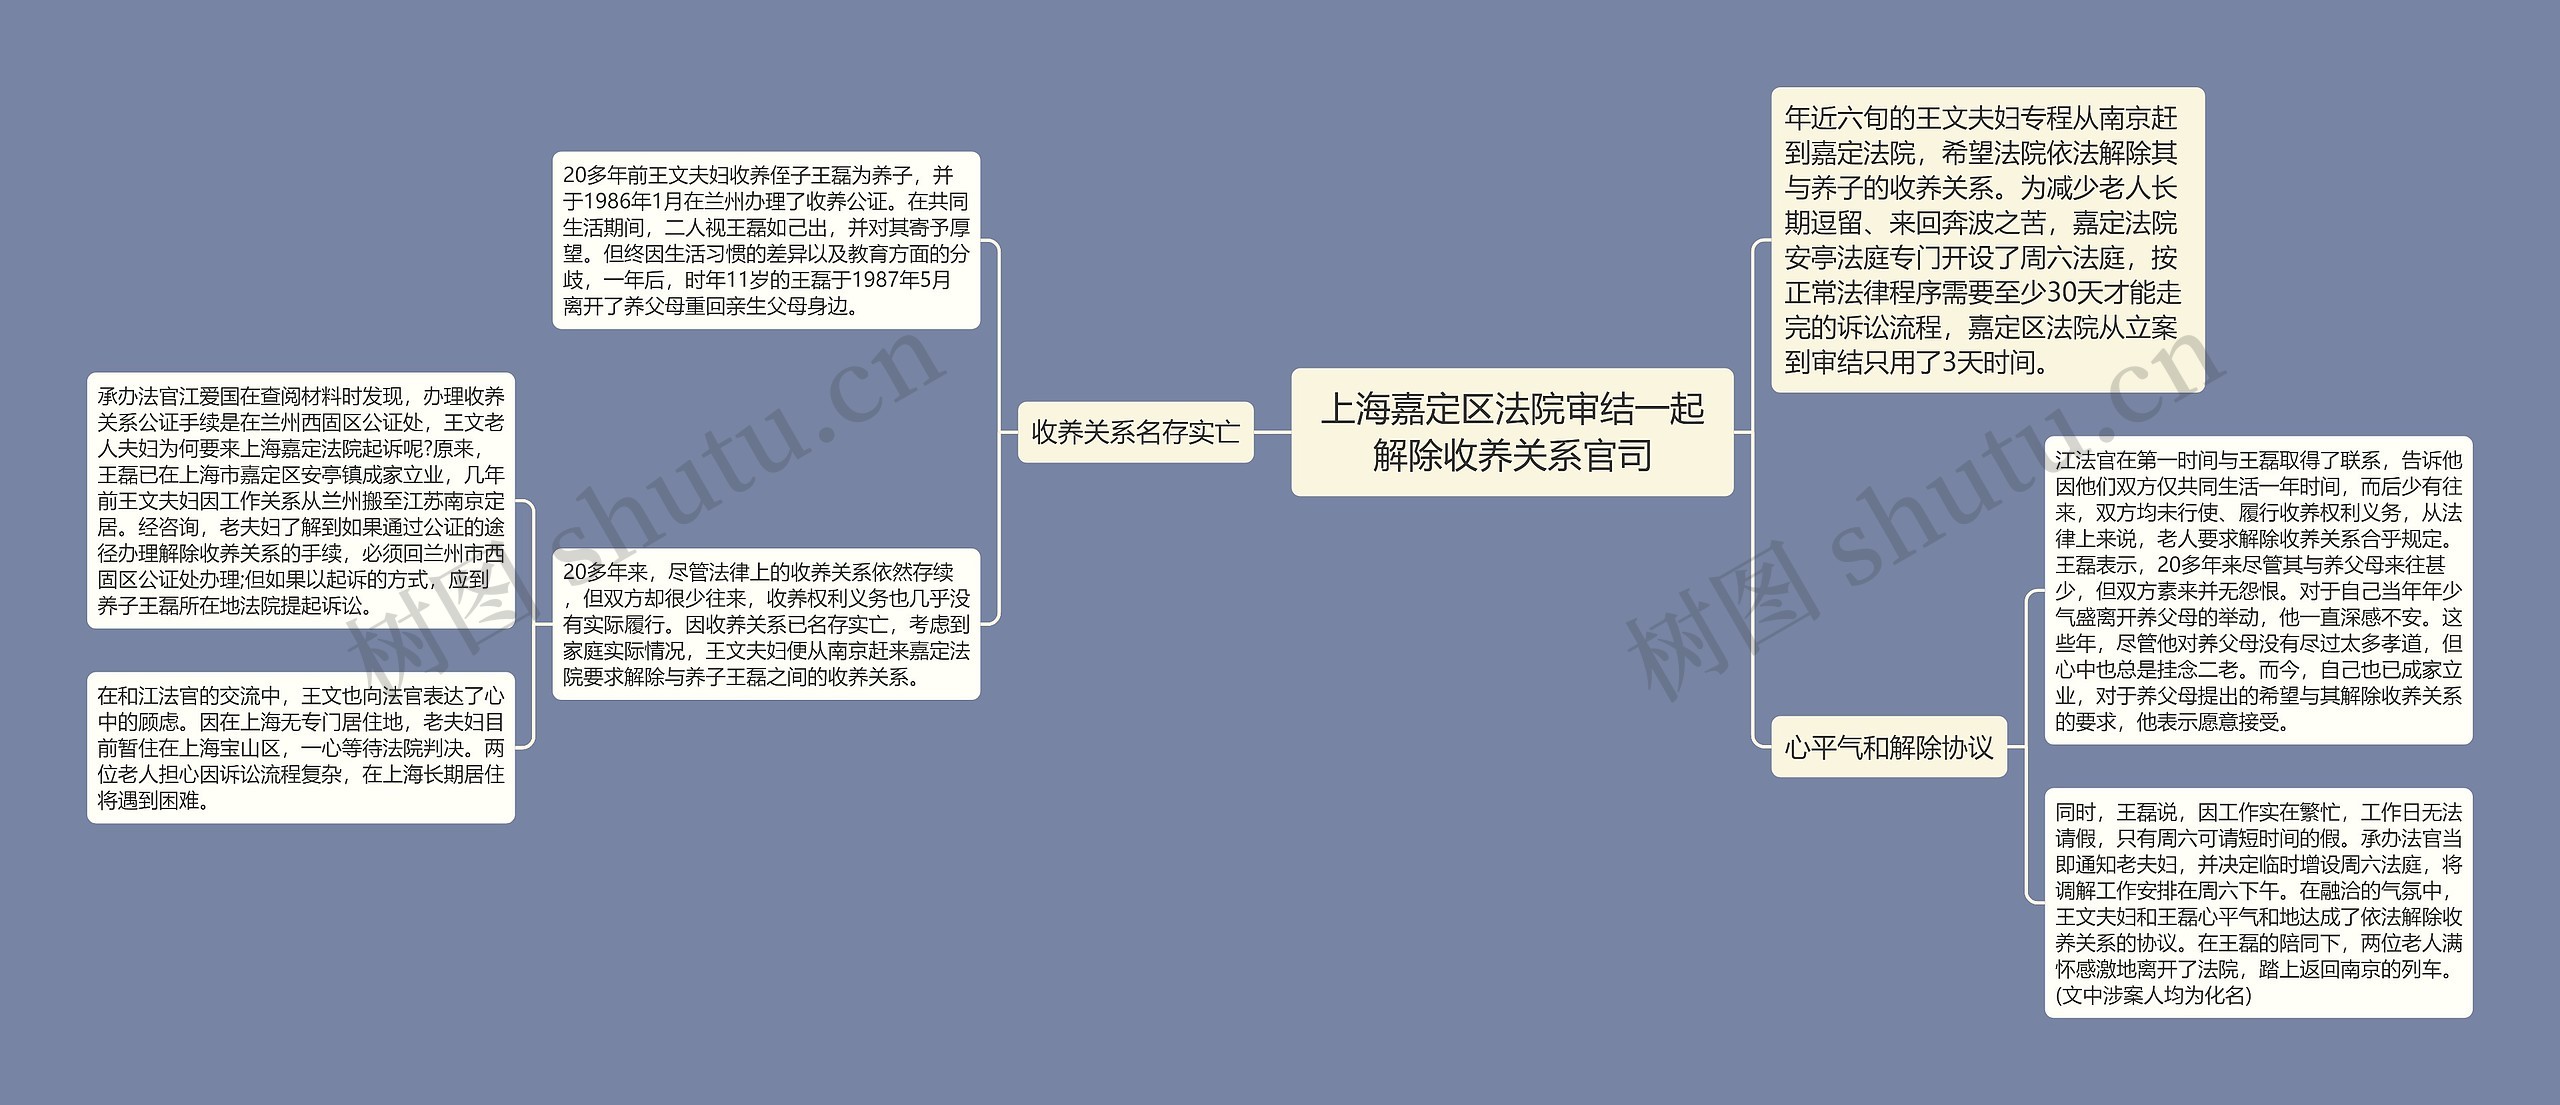 上海嘉定区法院审结一起解除收养关系官司